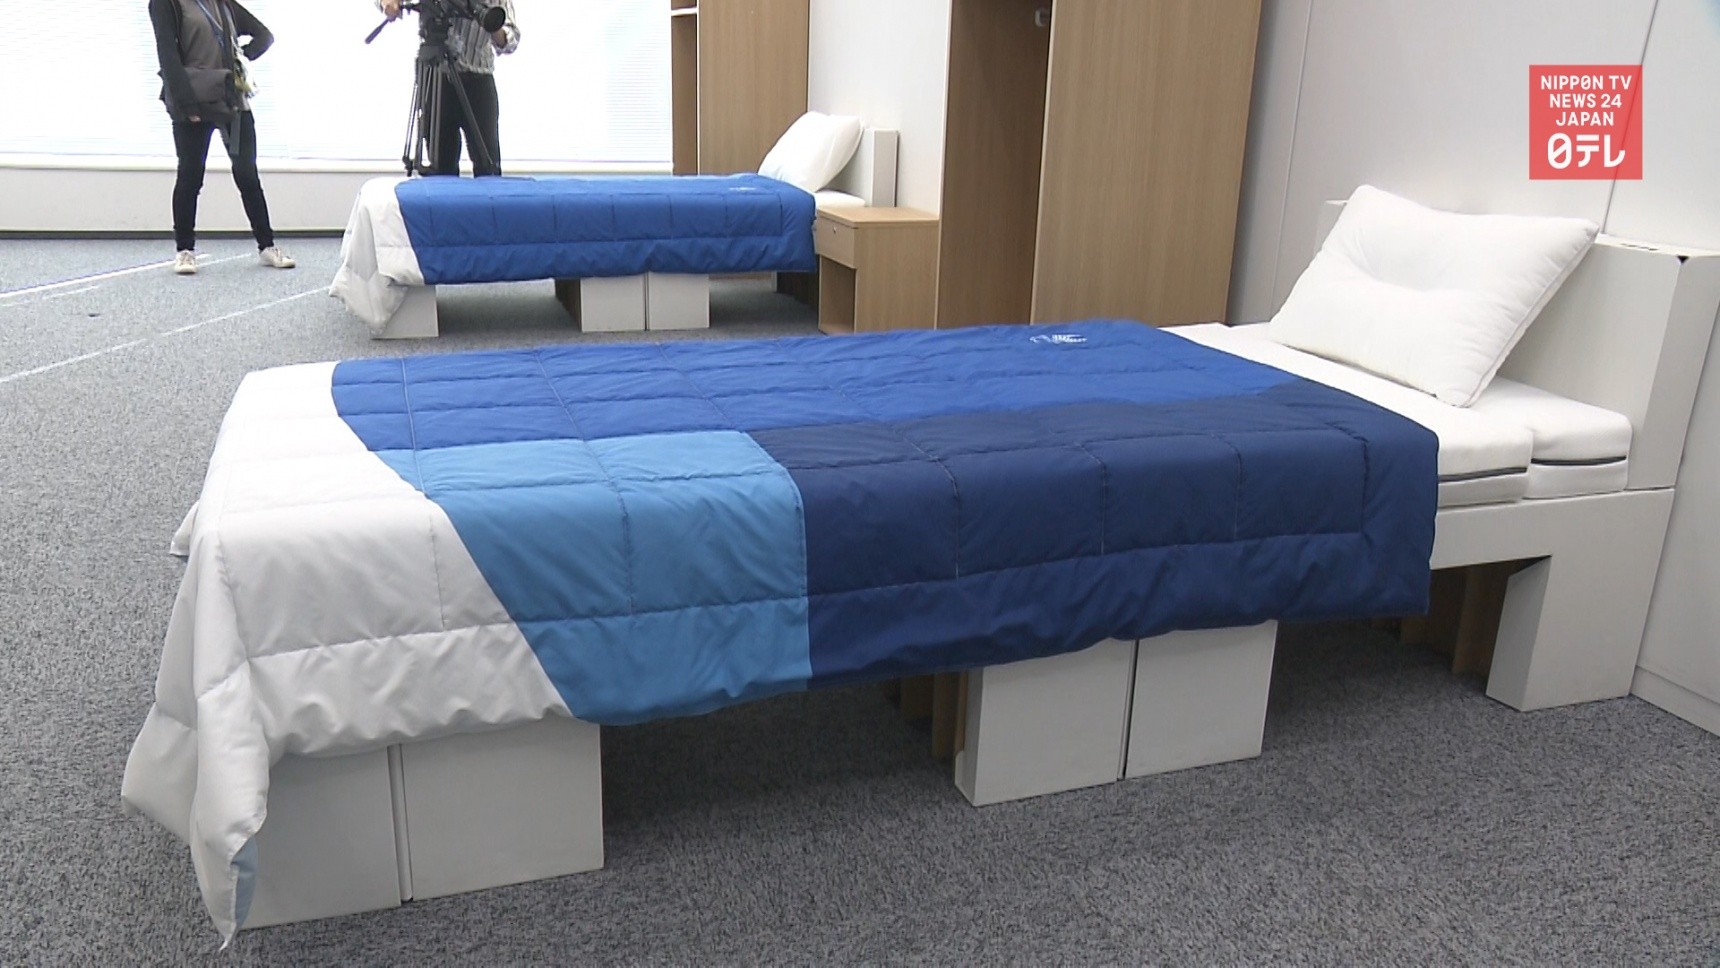 propolski.pl: Tekturowe łóżka dla olimpijczyków. "By nie było okazji do sytuacji pozasportowych"